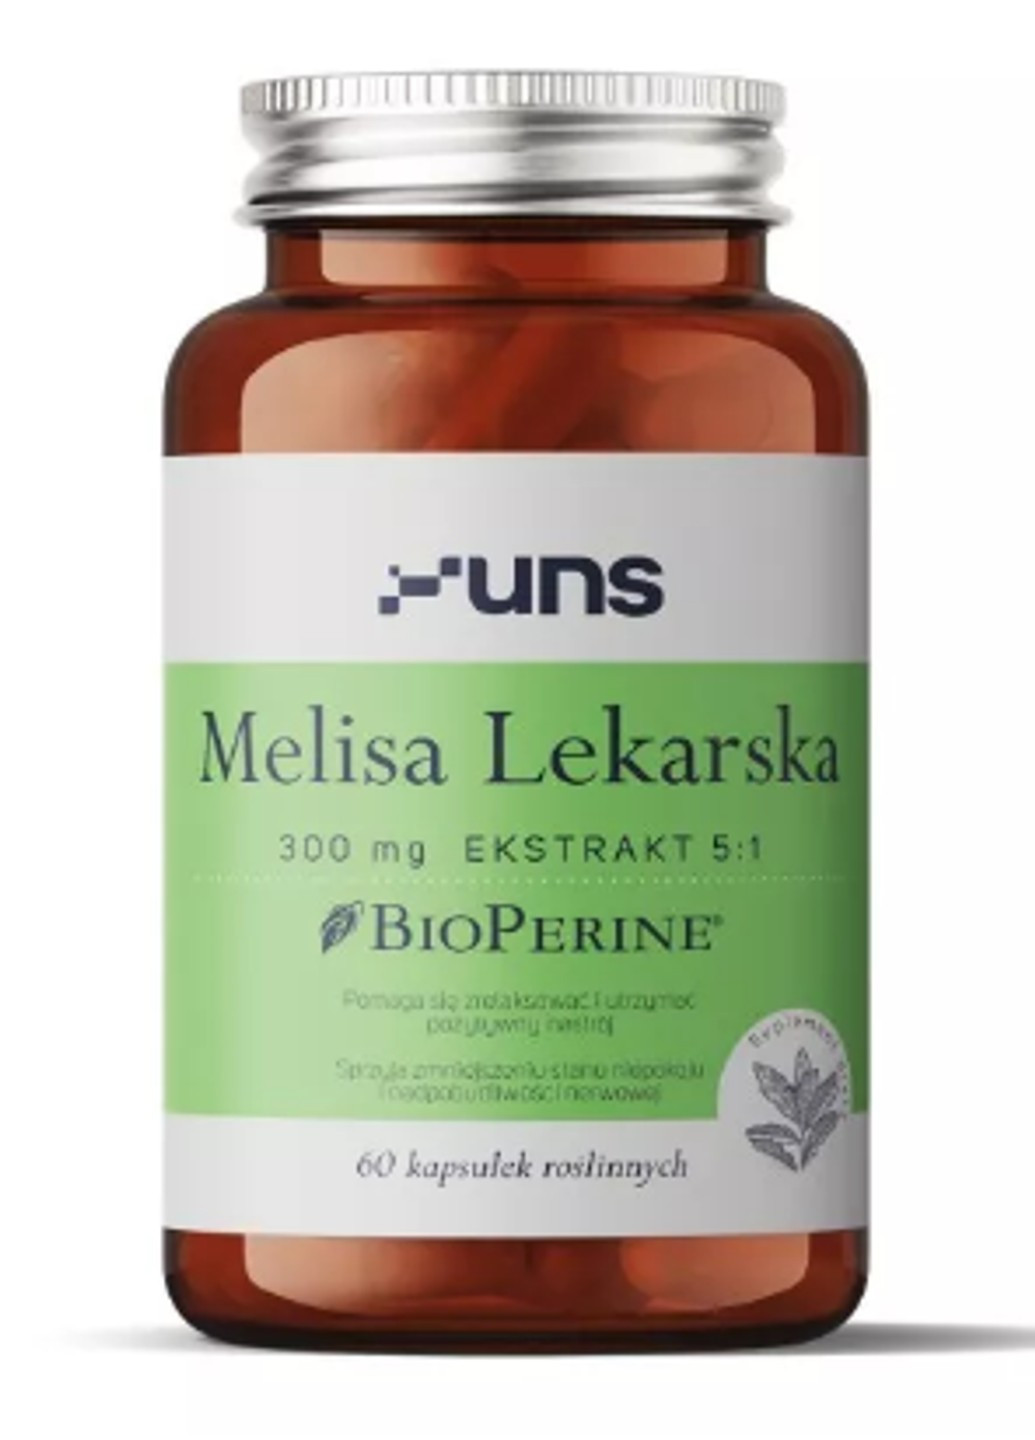 Меліса лікарська Melisa Lekarska 300mg 60 капсул Uns (255410300)